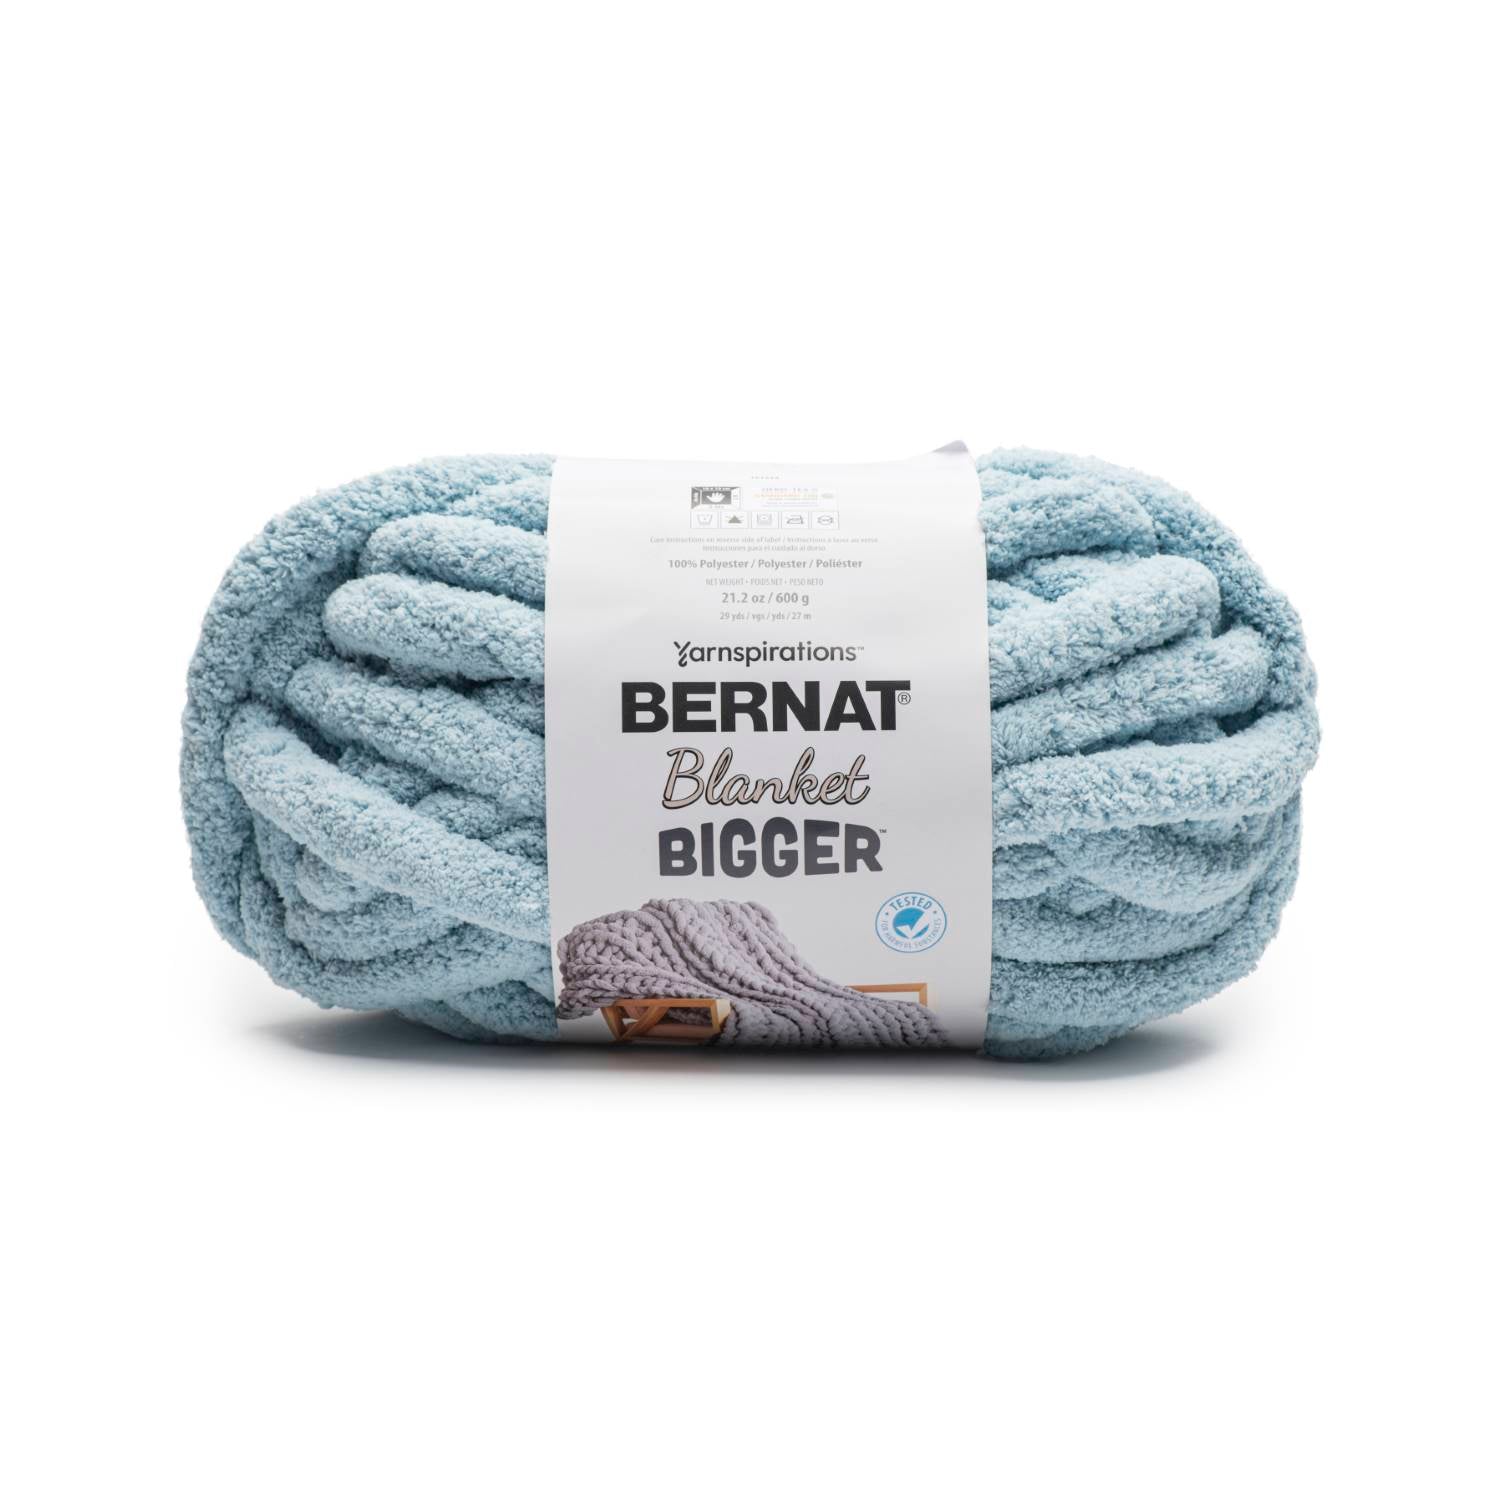 Bernat Blanket Bigger Yarn (600gr/21.2oz)